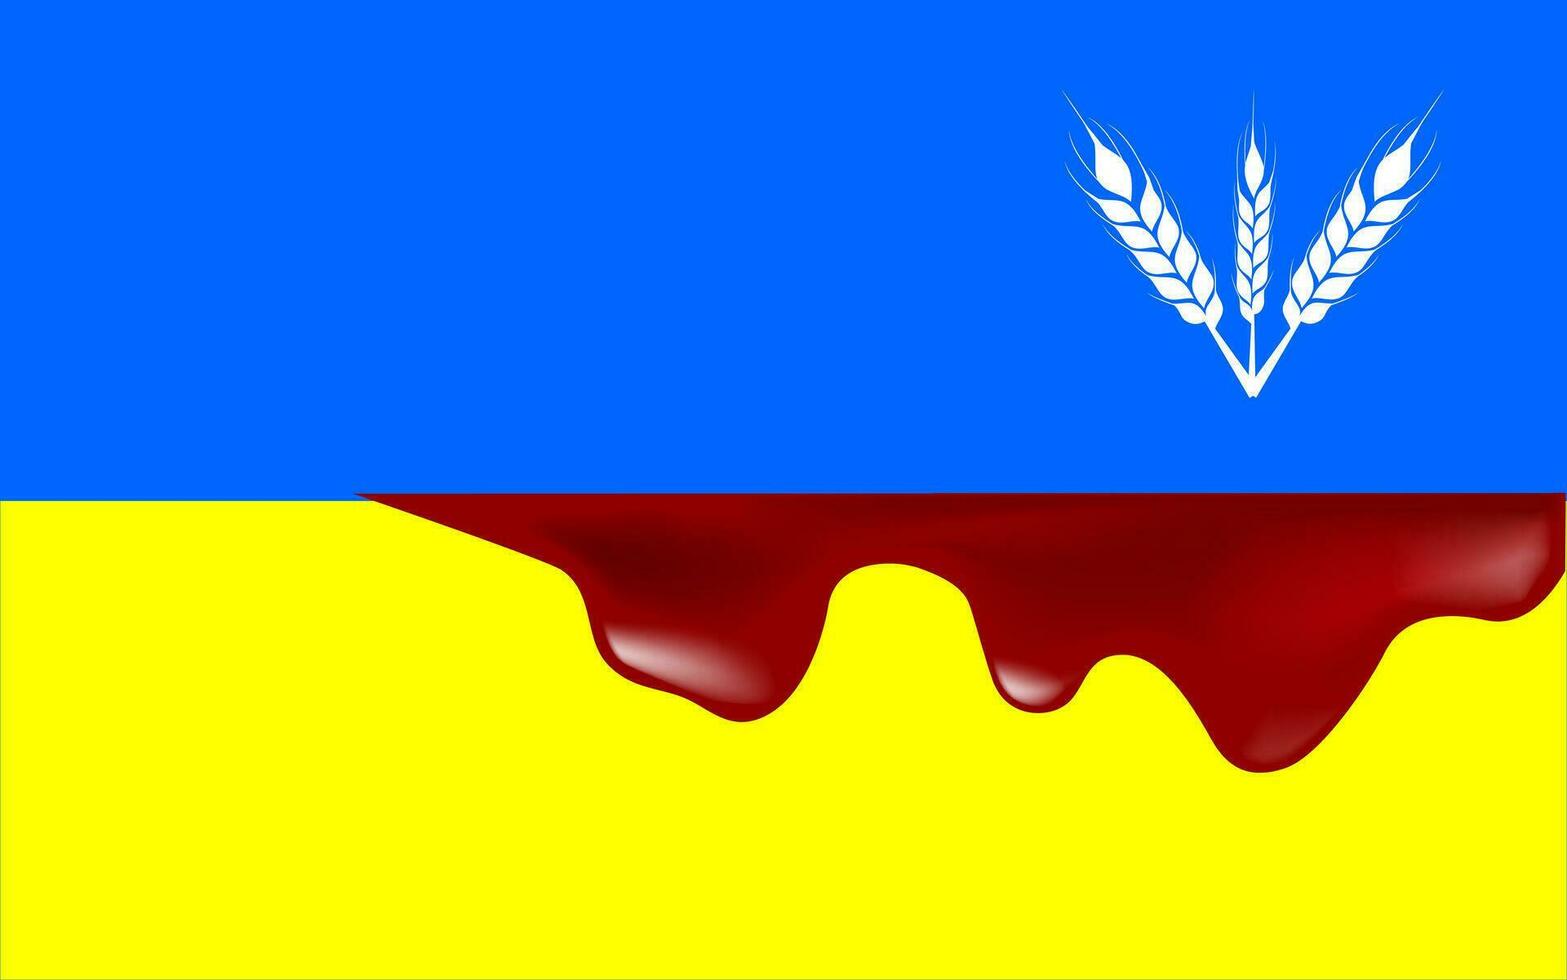 sangue em ucraniano bandeira, guerra dentro Ucrânia conceptual vetor ilustração